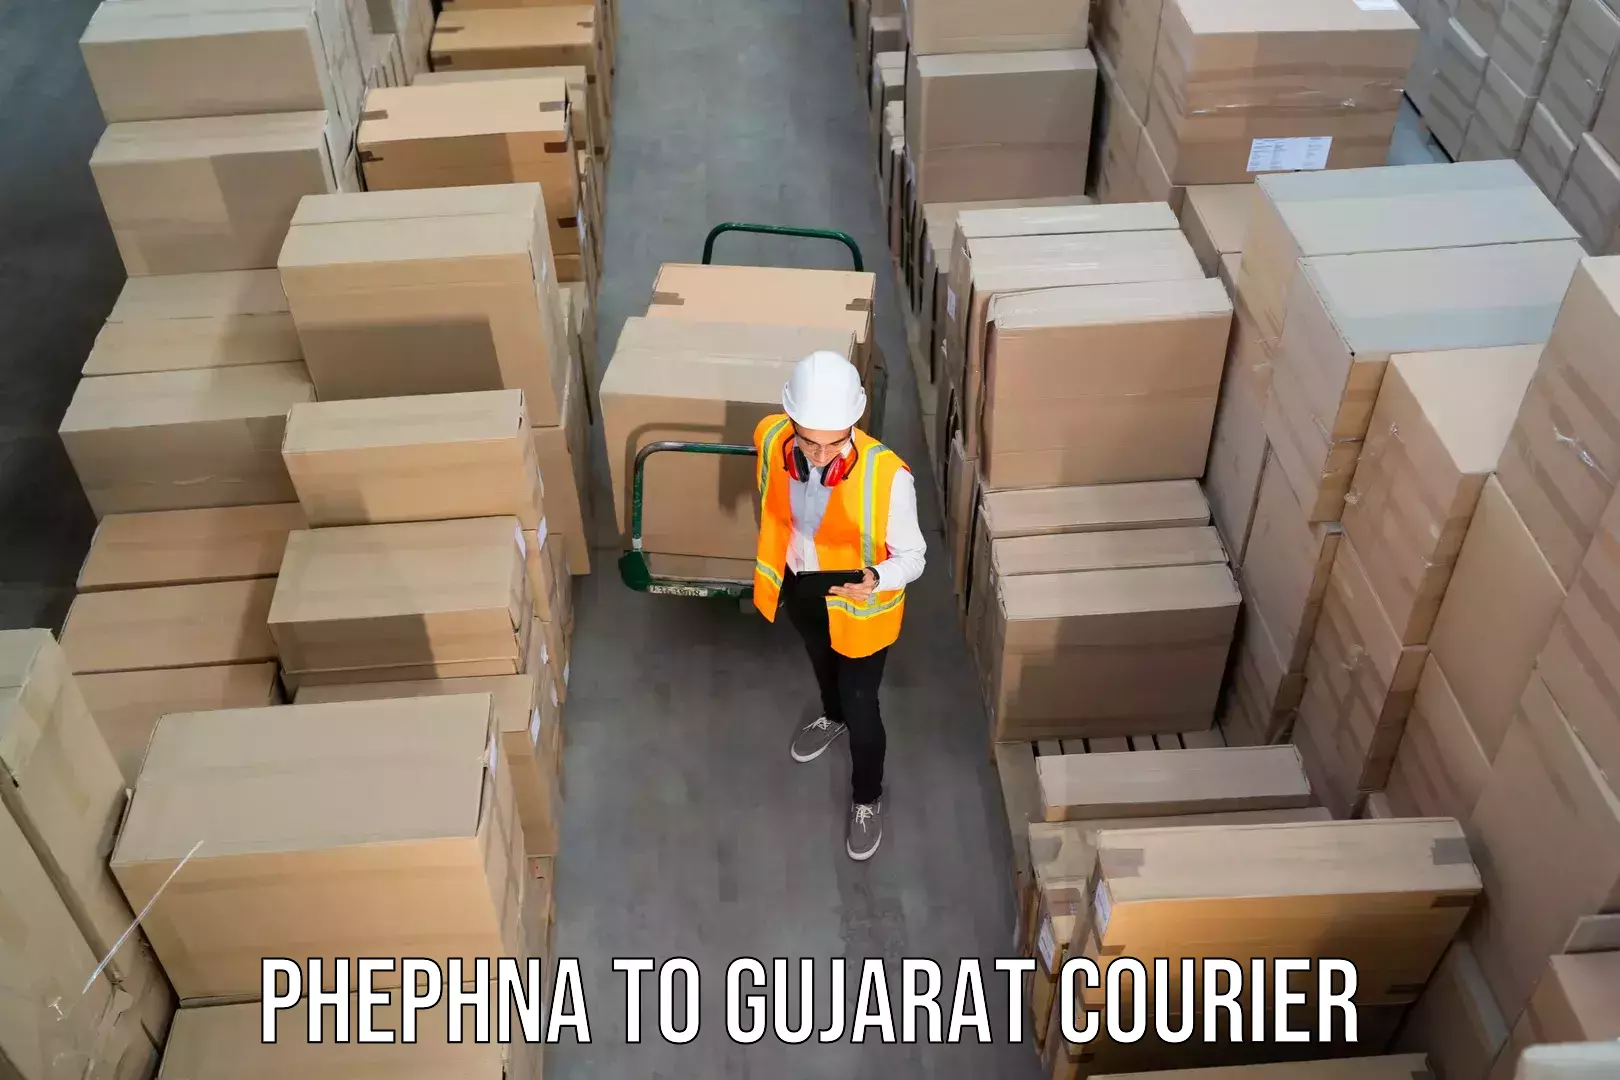 Courier service efficiency in Phephna to Rajpipla